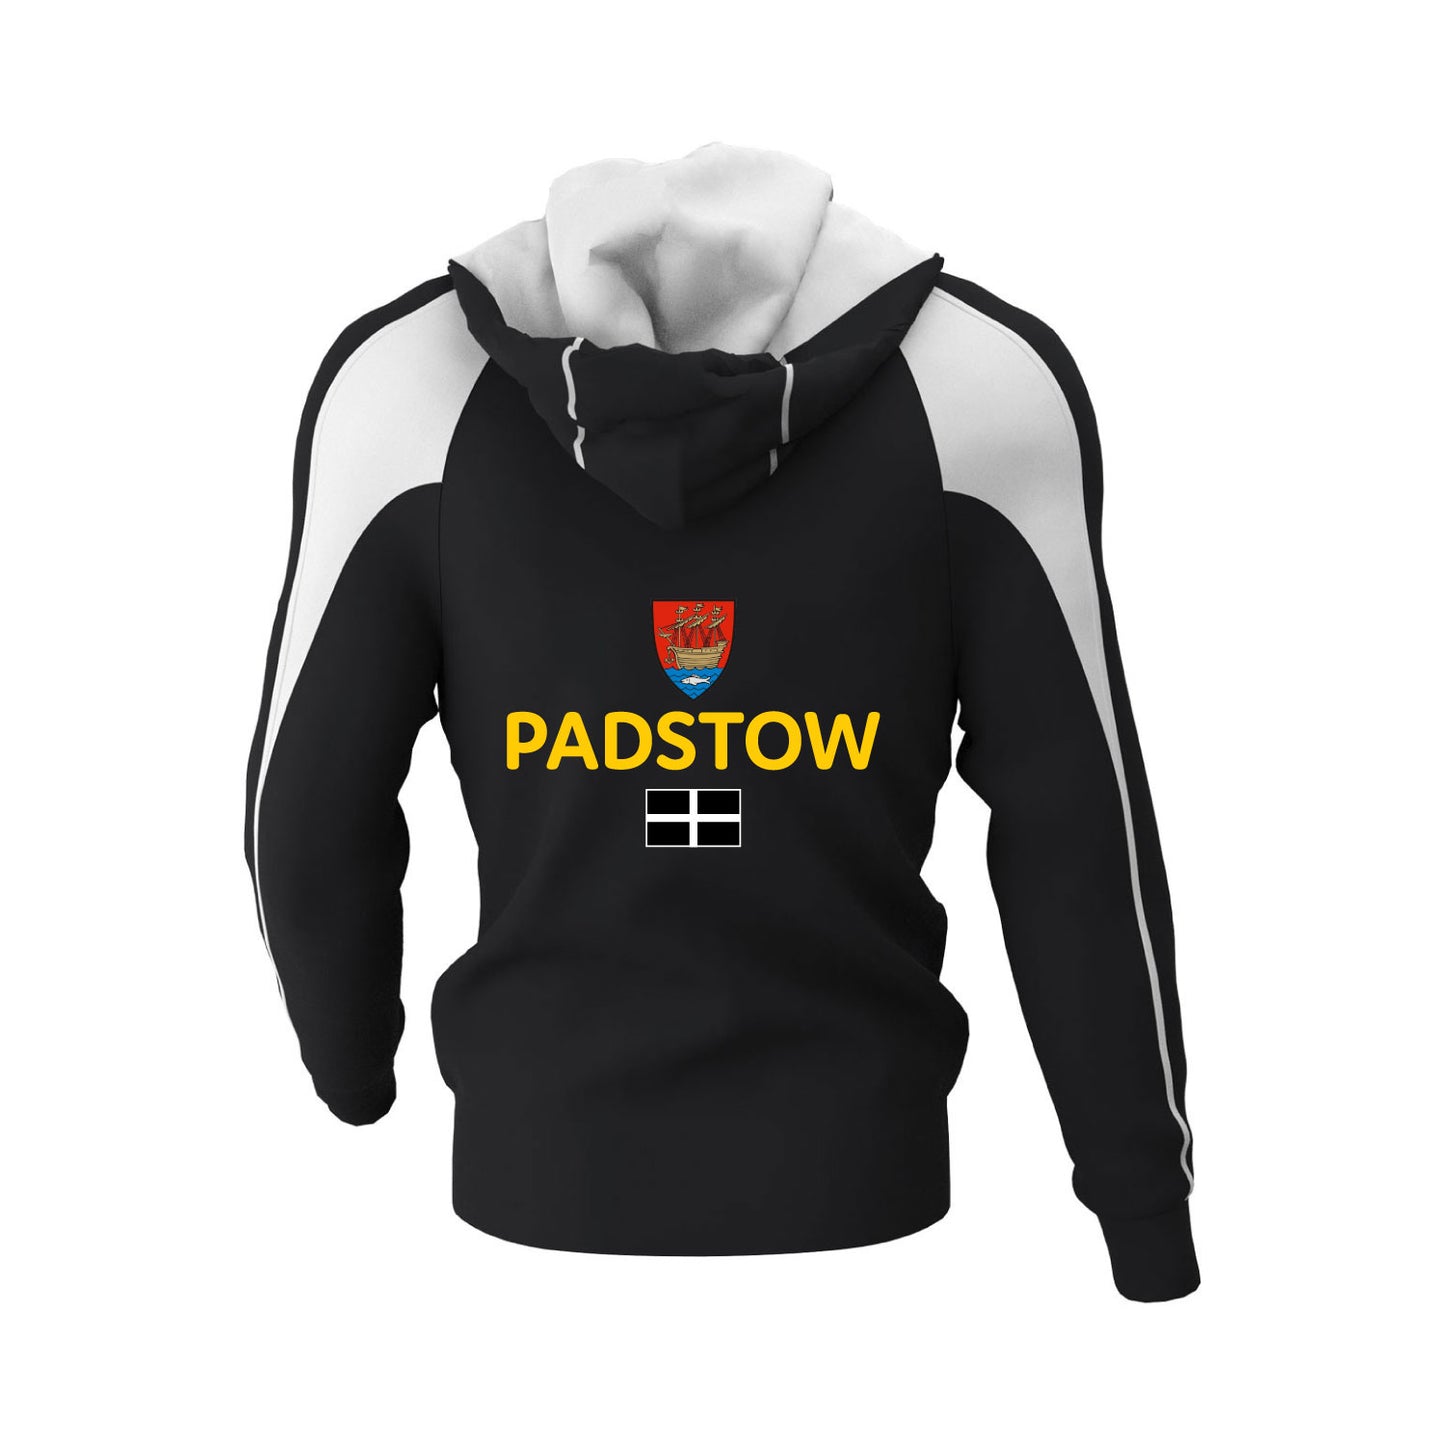 Padstow Rowing Club Hoodie